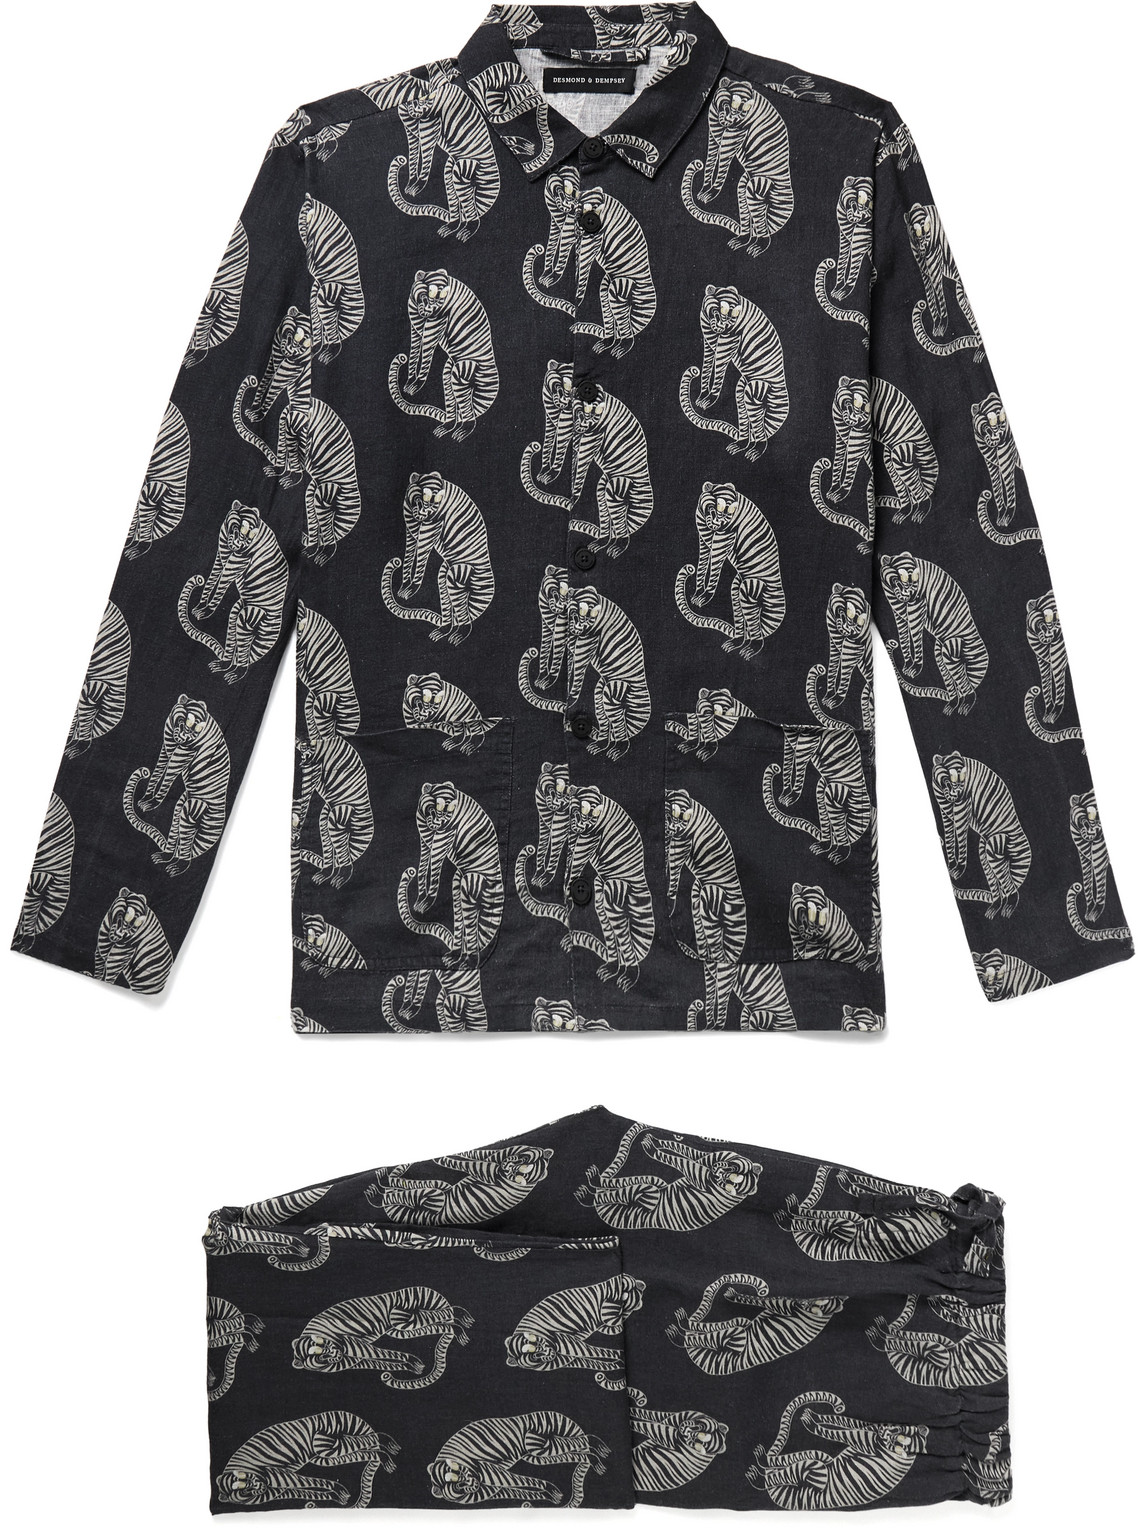 Desmond & Dempsey - Printed Linen Pyjama Set - Men - Black - XL von Desmond & Dempsey